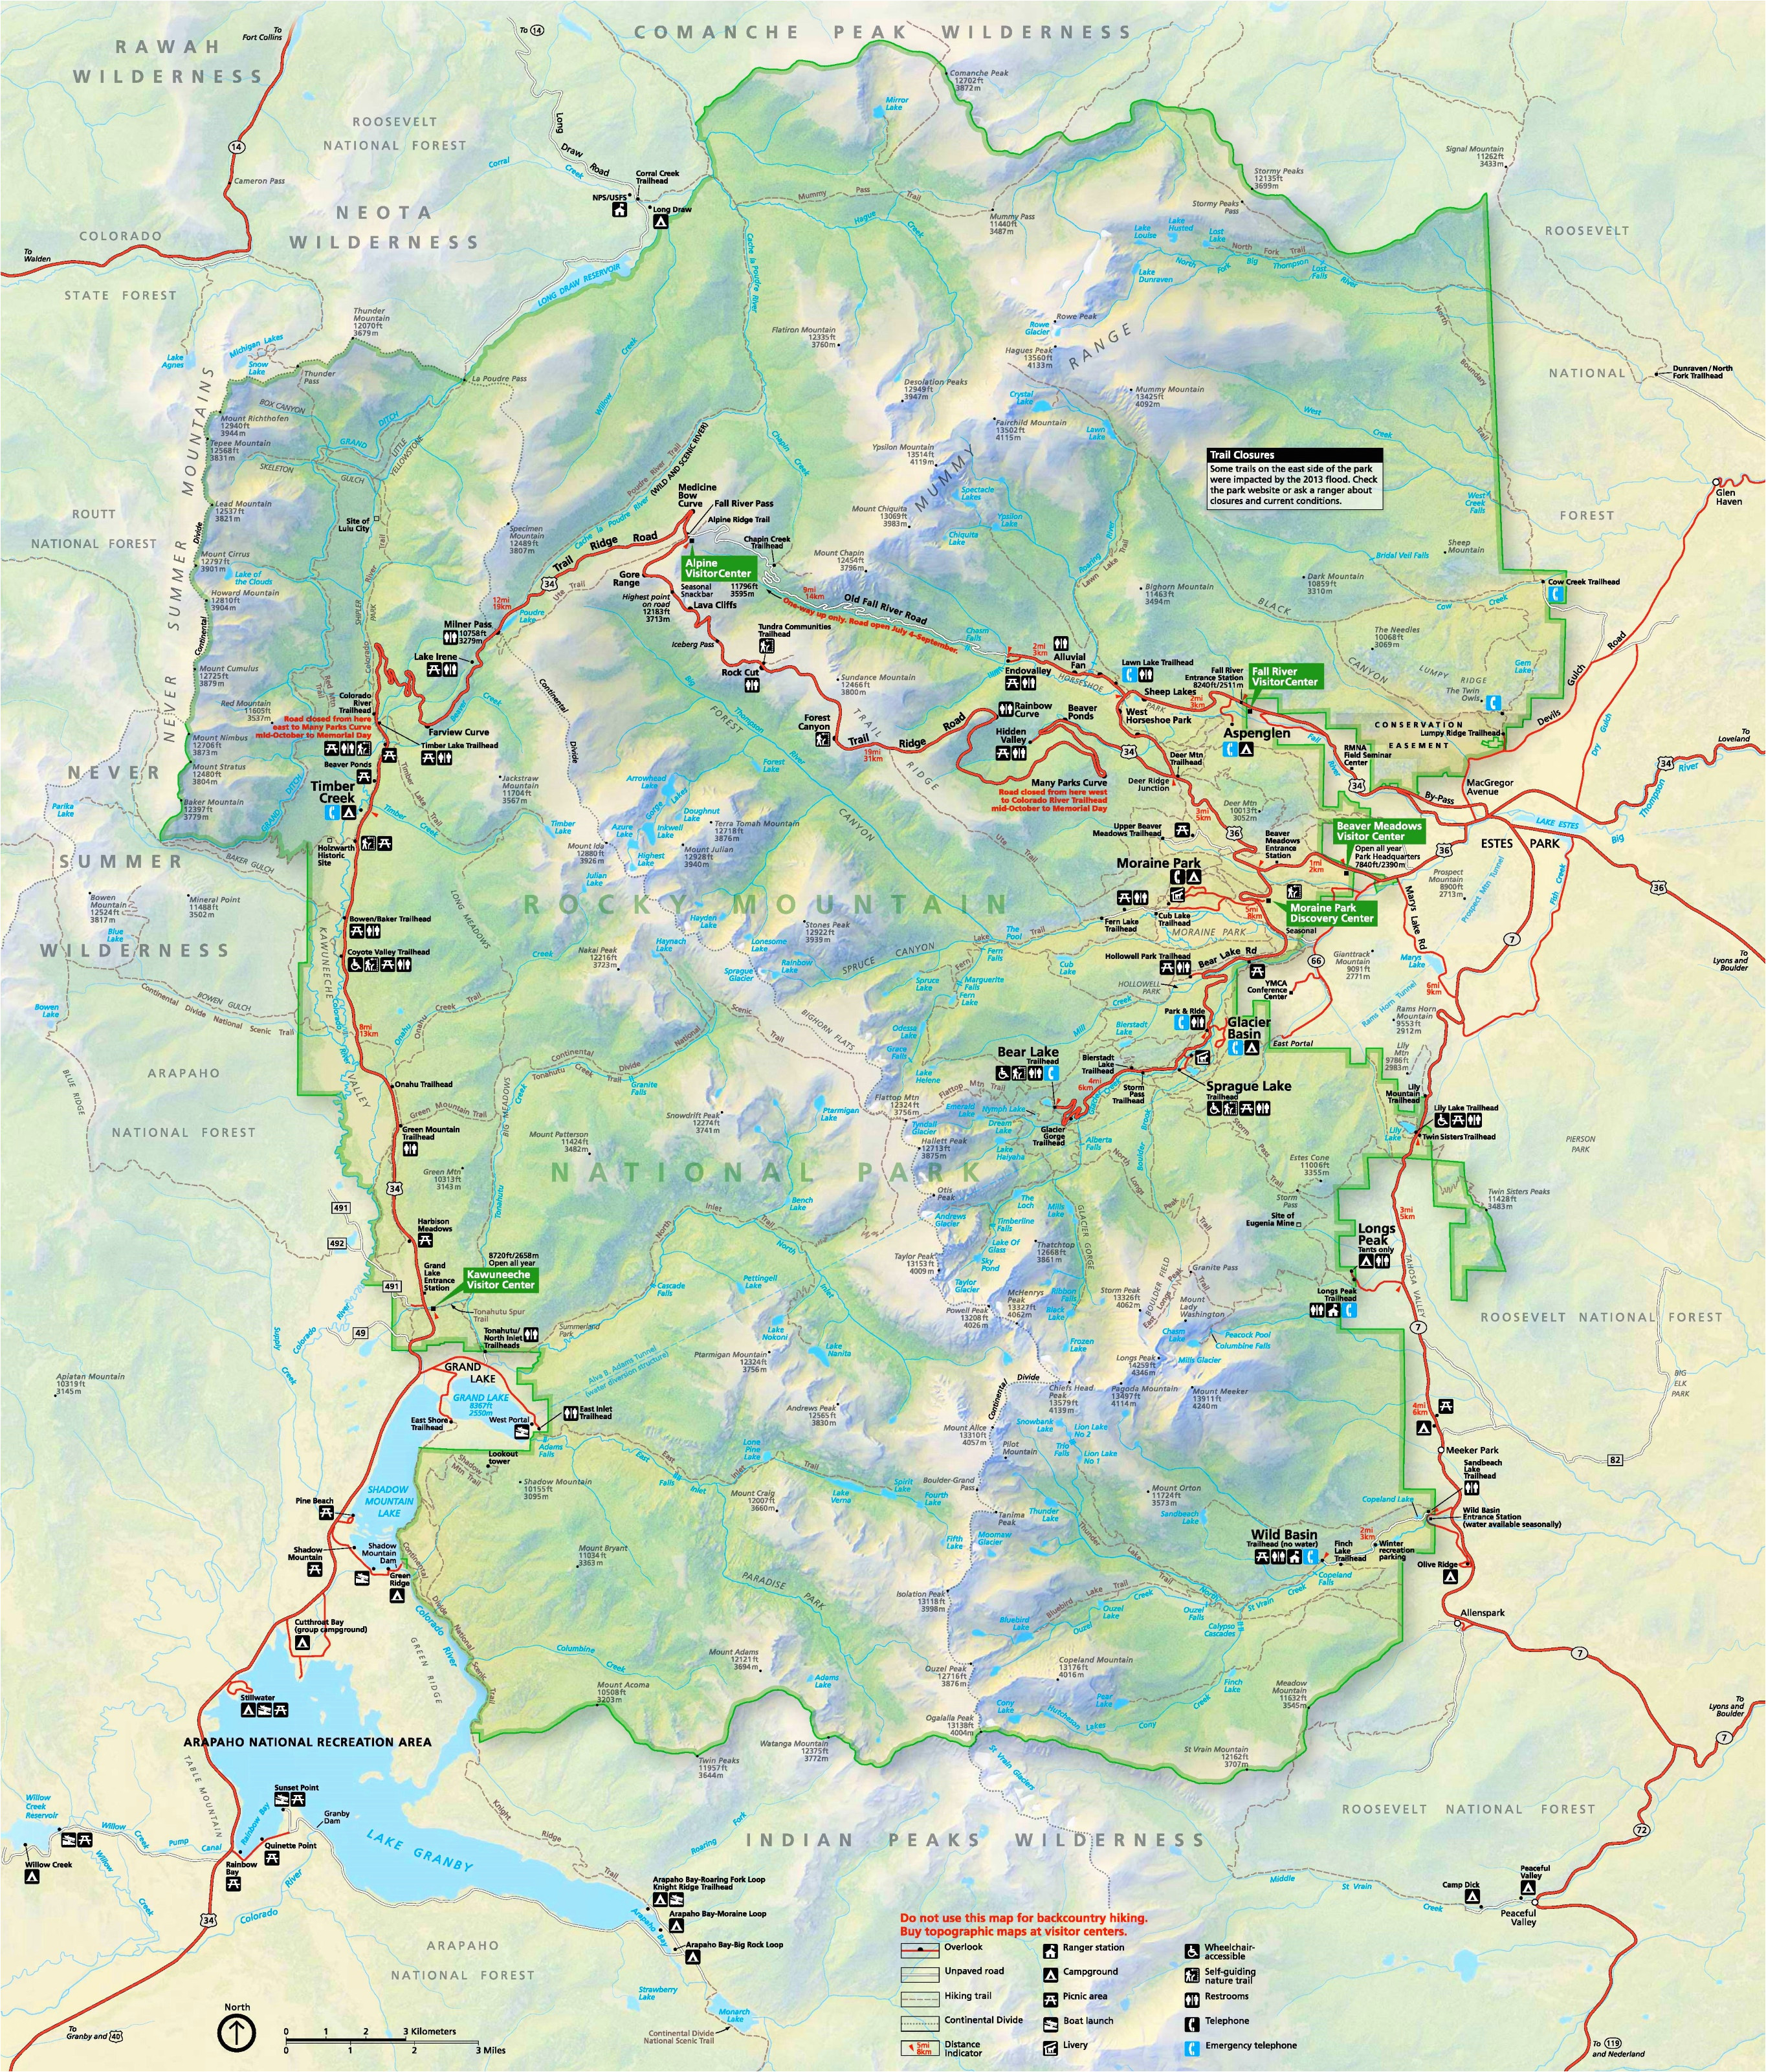 Map Of Rocky Mountain National Park Colorado | secretmuseum